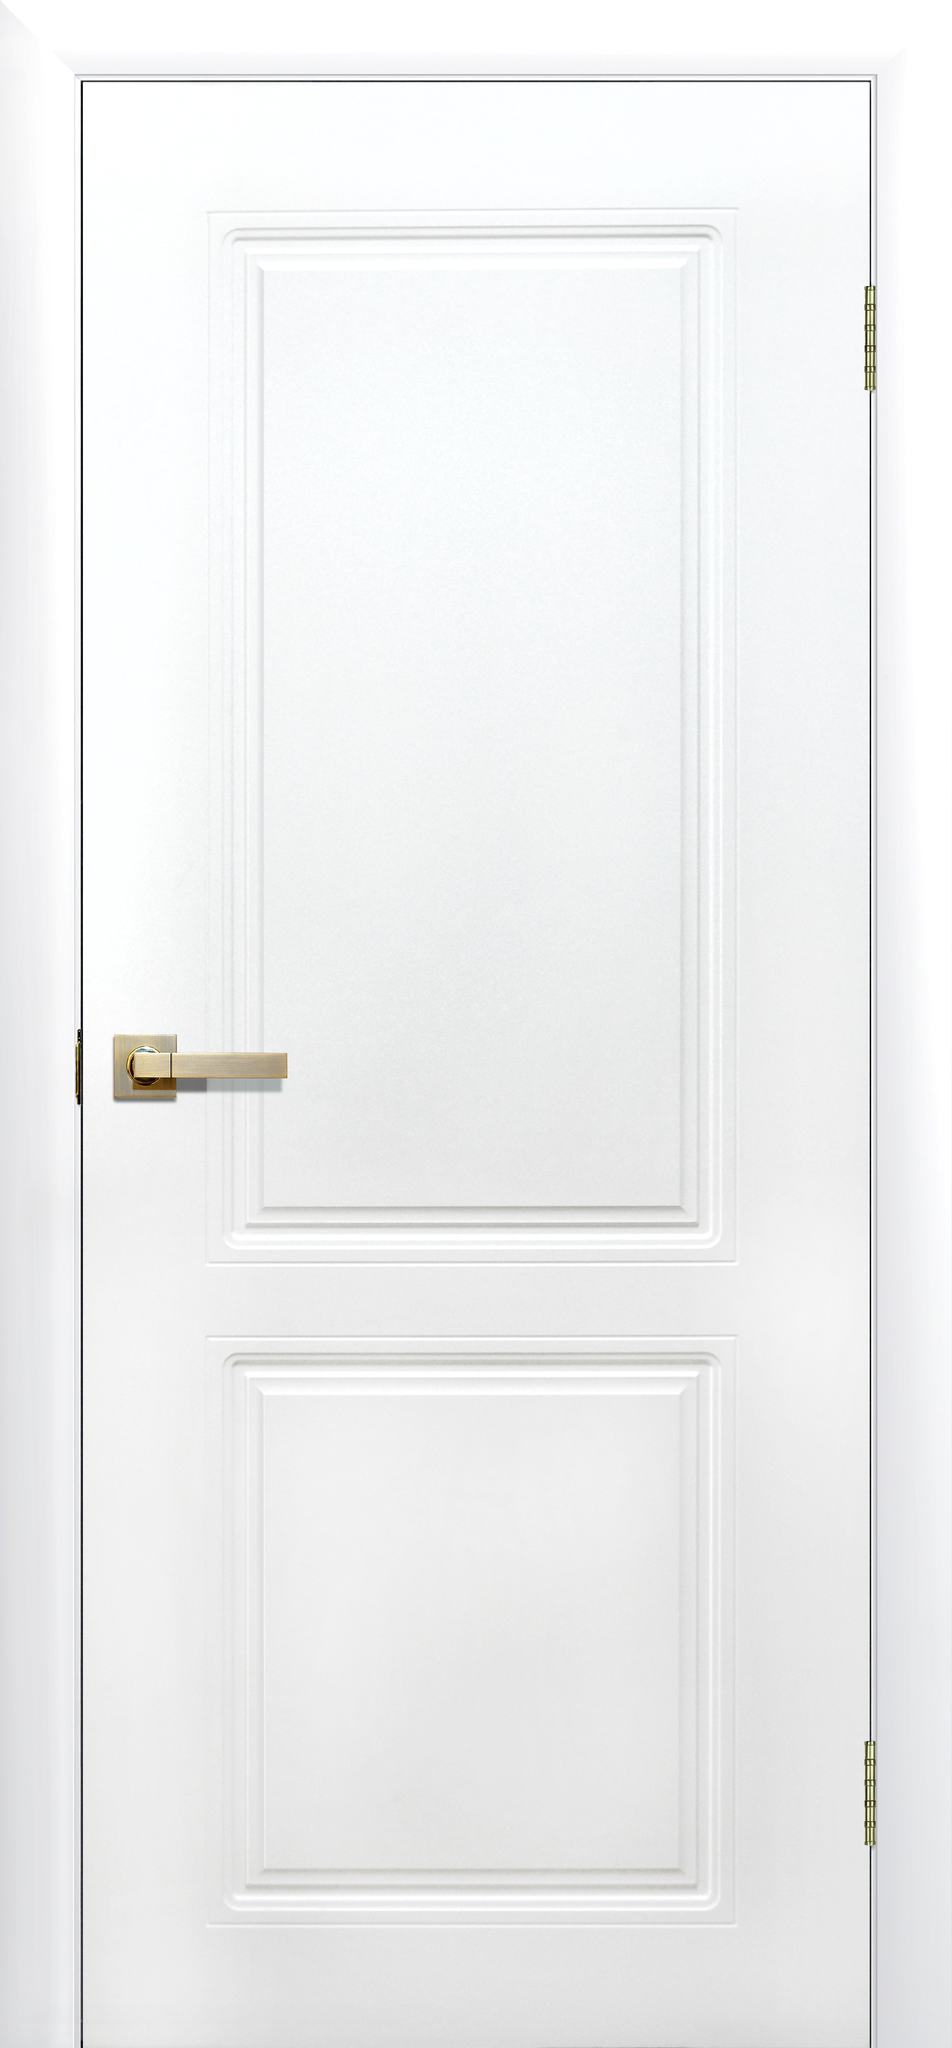 Как установить межкомнатную дверь без порога?